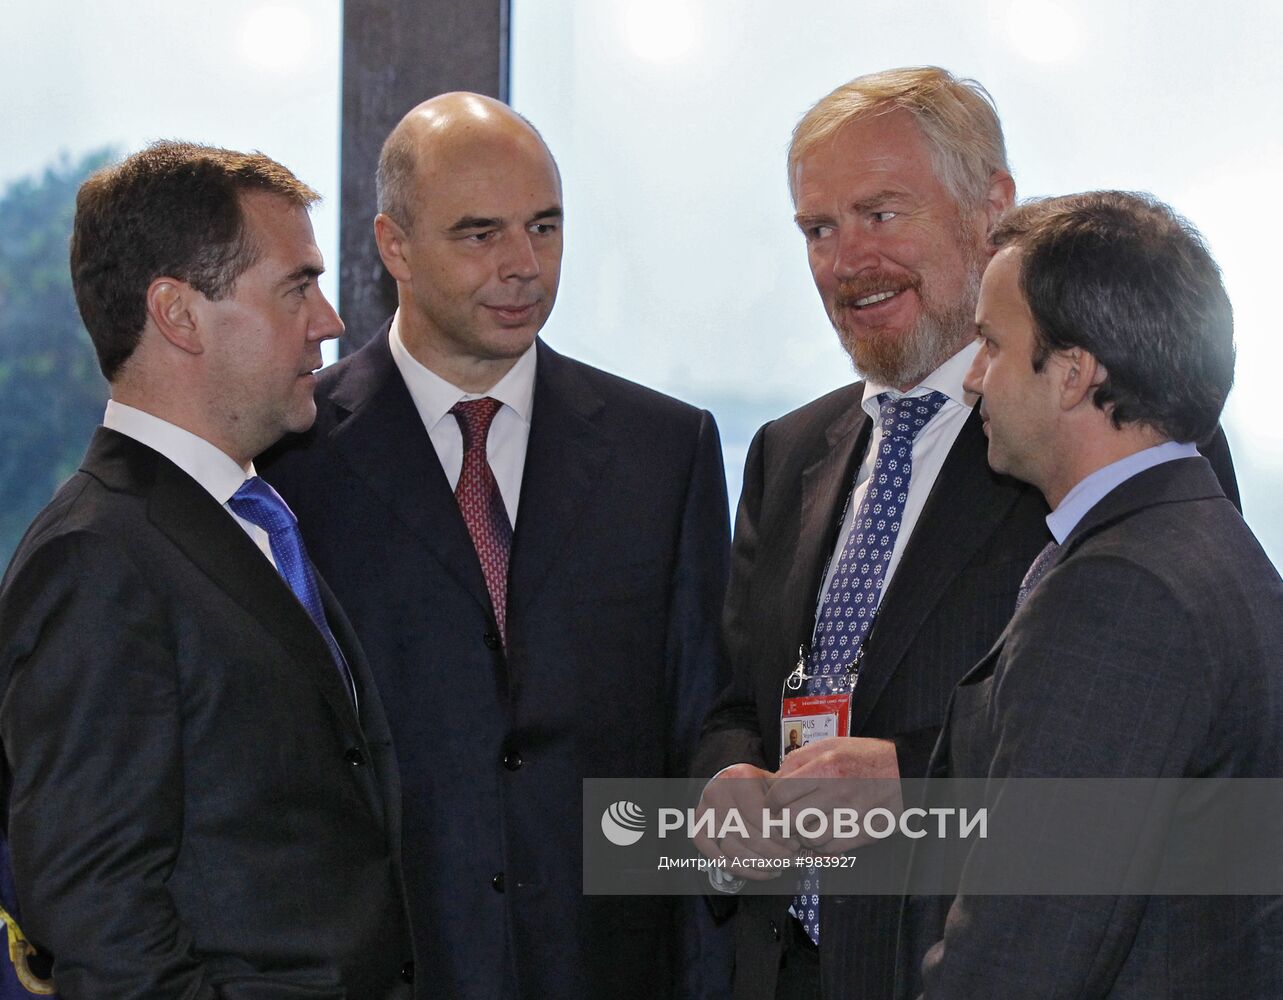 Д.Медведев принял участие в саммите G20 в Канне